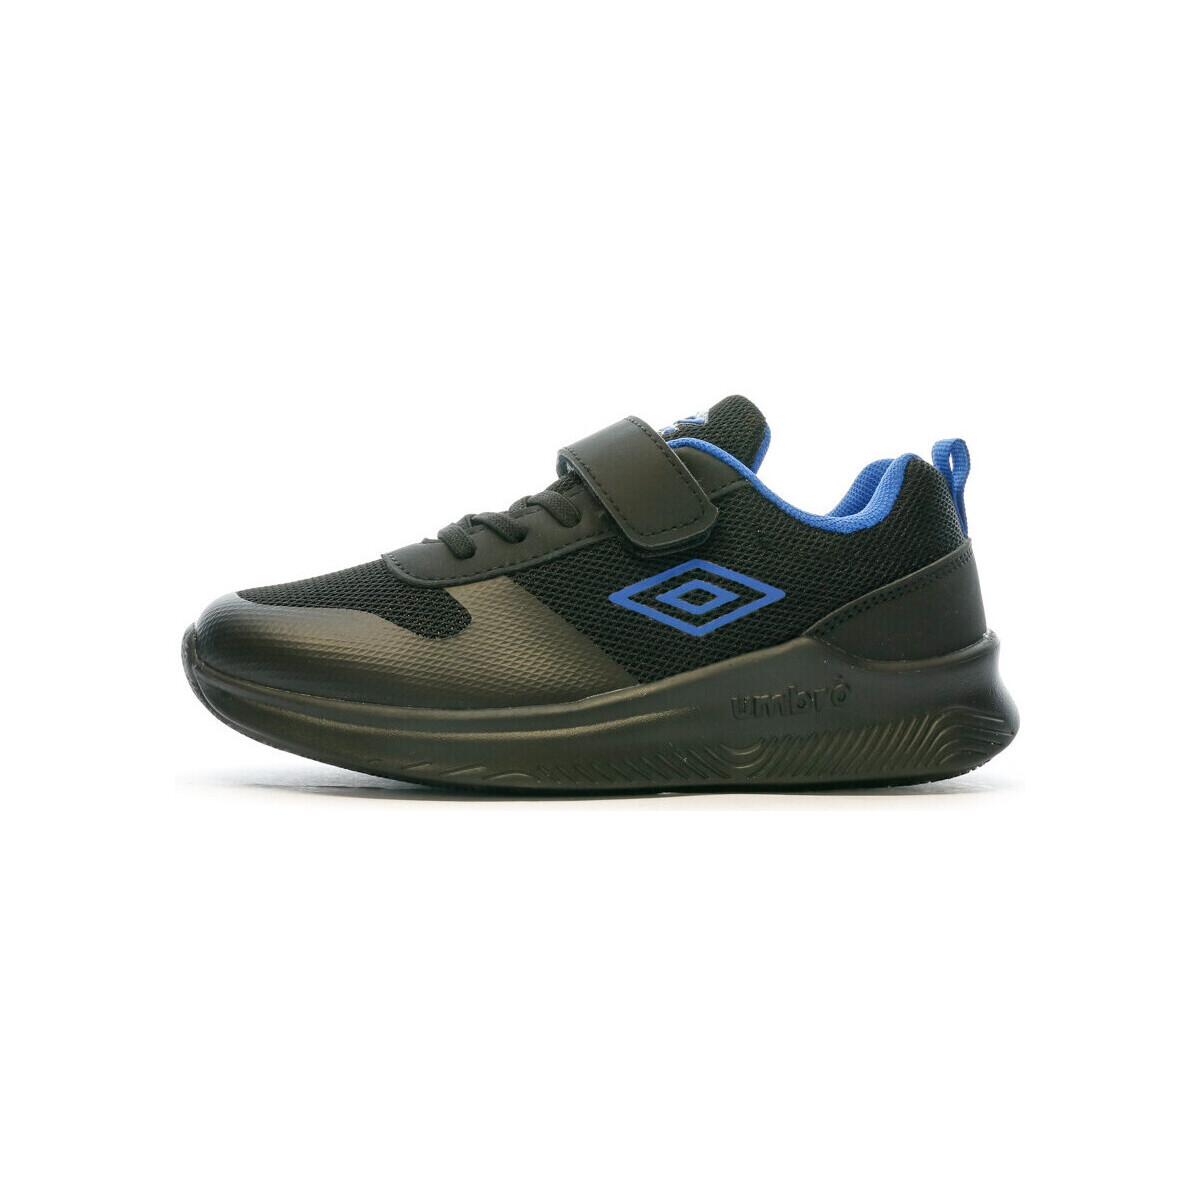 Chaussures Garçon Baskets basses Umbro 944541-30 Noir